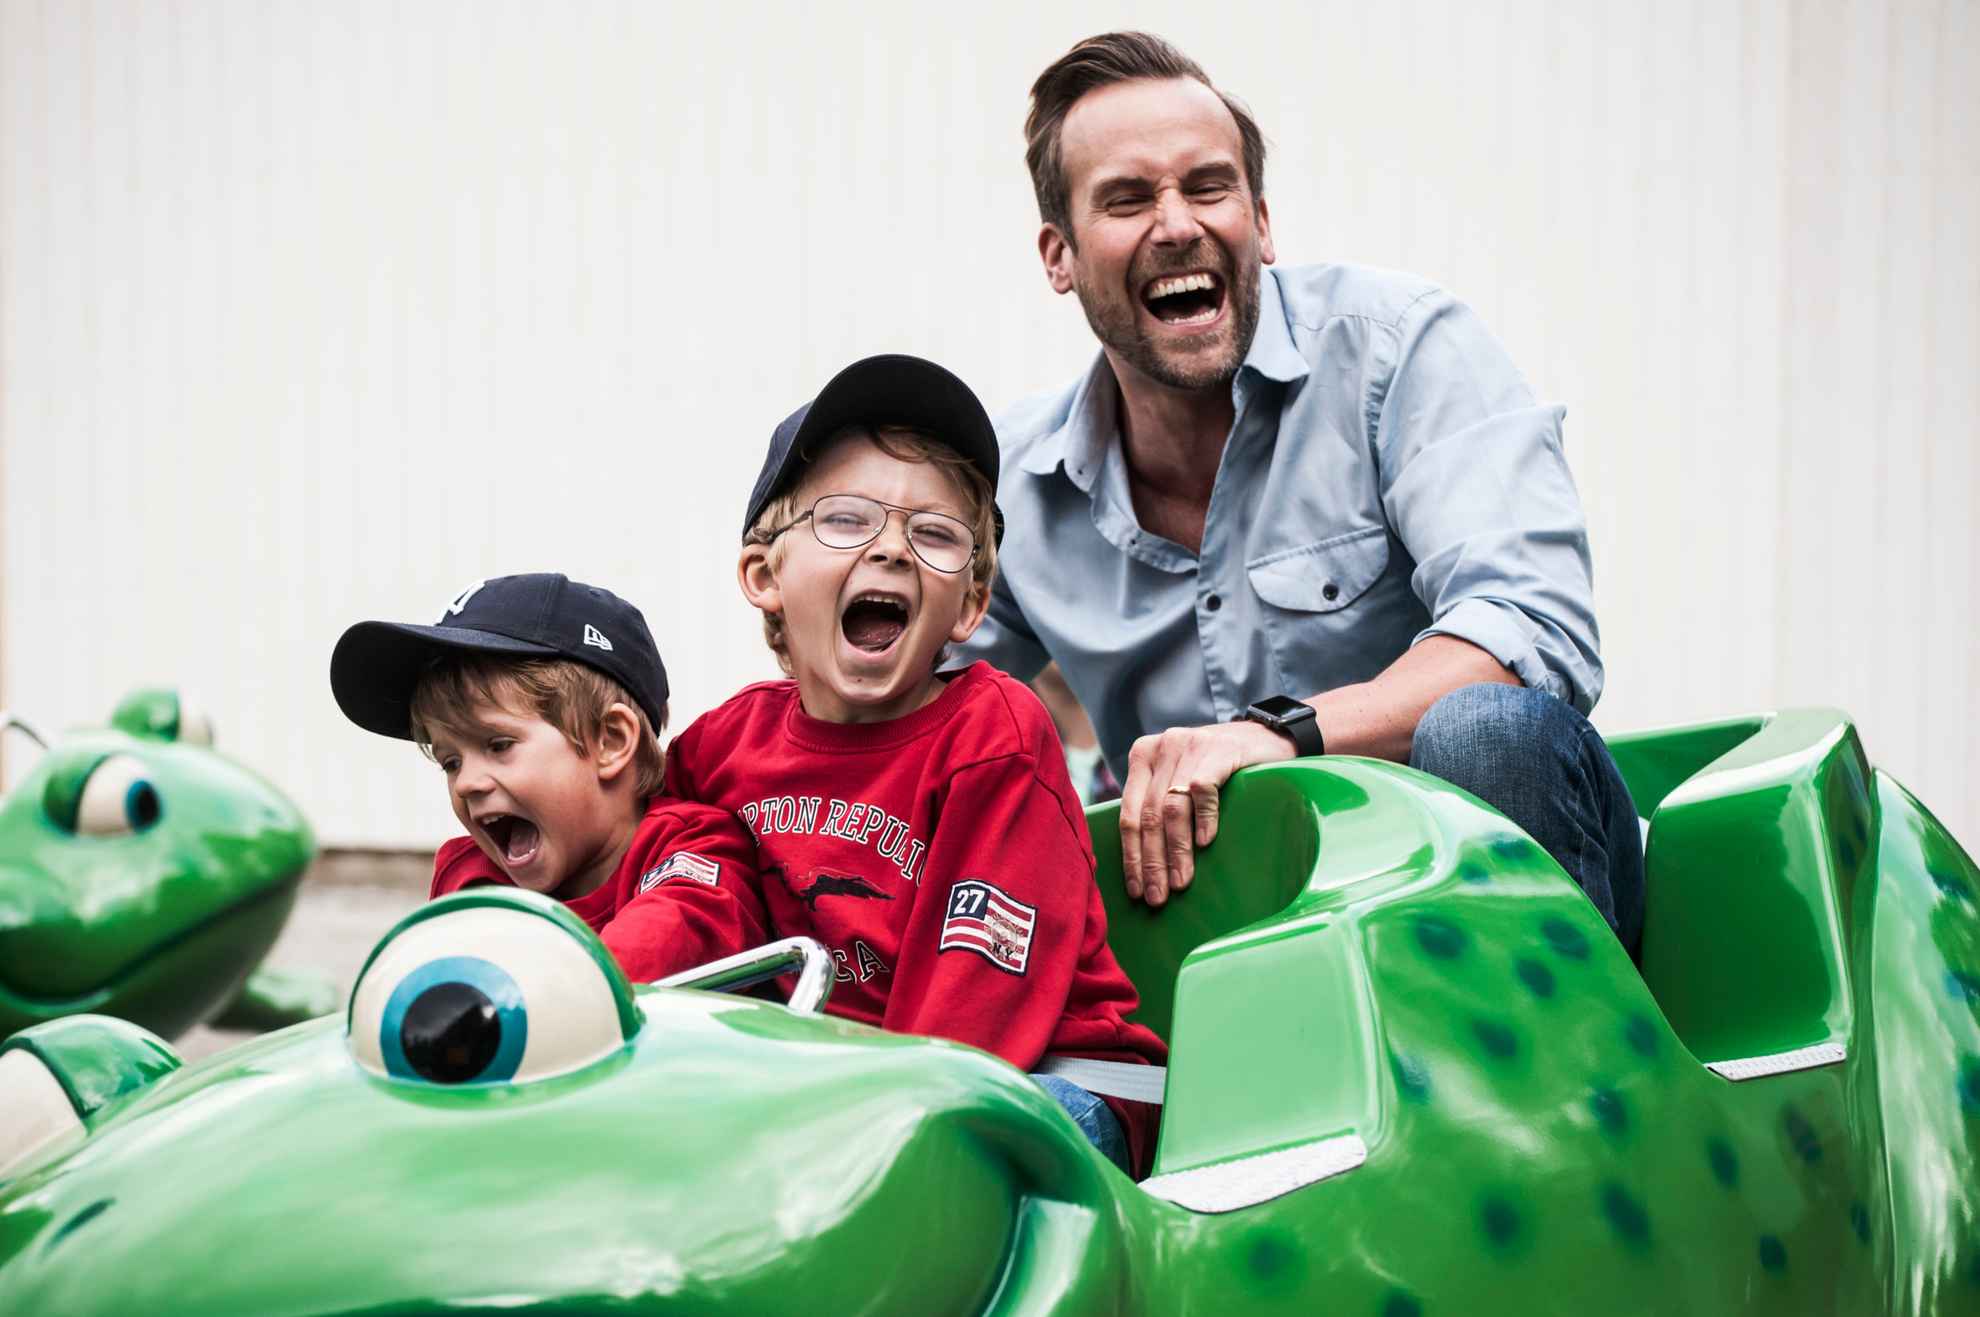 Twee lachende jongens in gezelschap van een man in een groene achtbaan bij Furuvik.